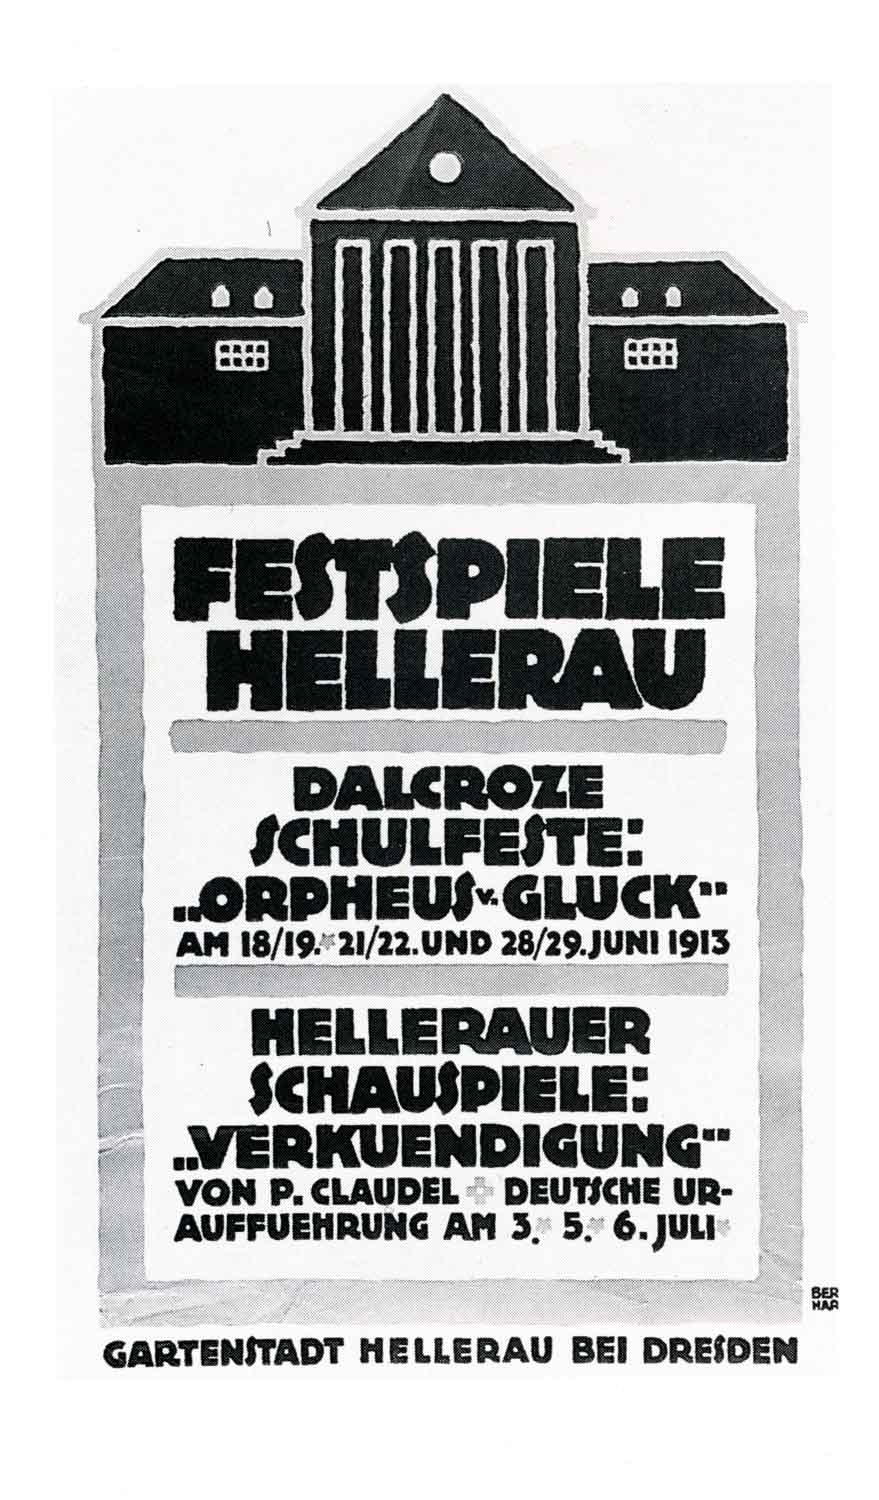 Plakat mit Text: "Festspiele Hellerau. Dalcroze Schulfeste: Orpheus von Gluck. Am 18./19.21./22. und 28./29. Juni 1913. Hellerauer Schauspiele: Verkündigung von Paul Claudel. Deutsche Uraufführung. Am 3., 5., 6. Juli. Gartenstadt Hellerau bei Dresden".